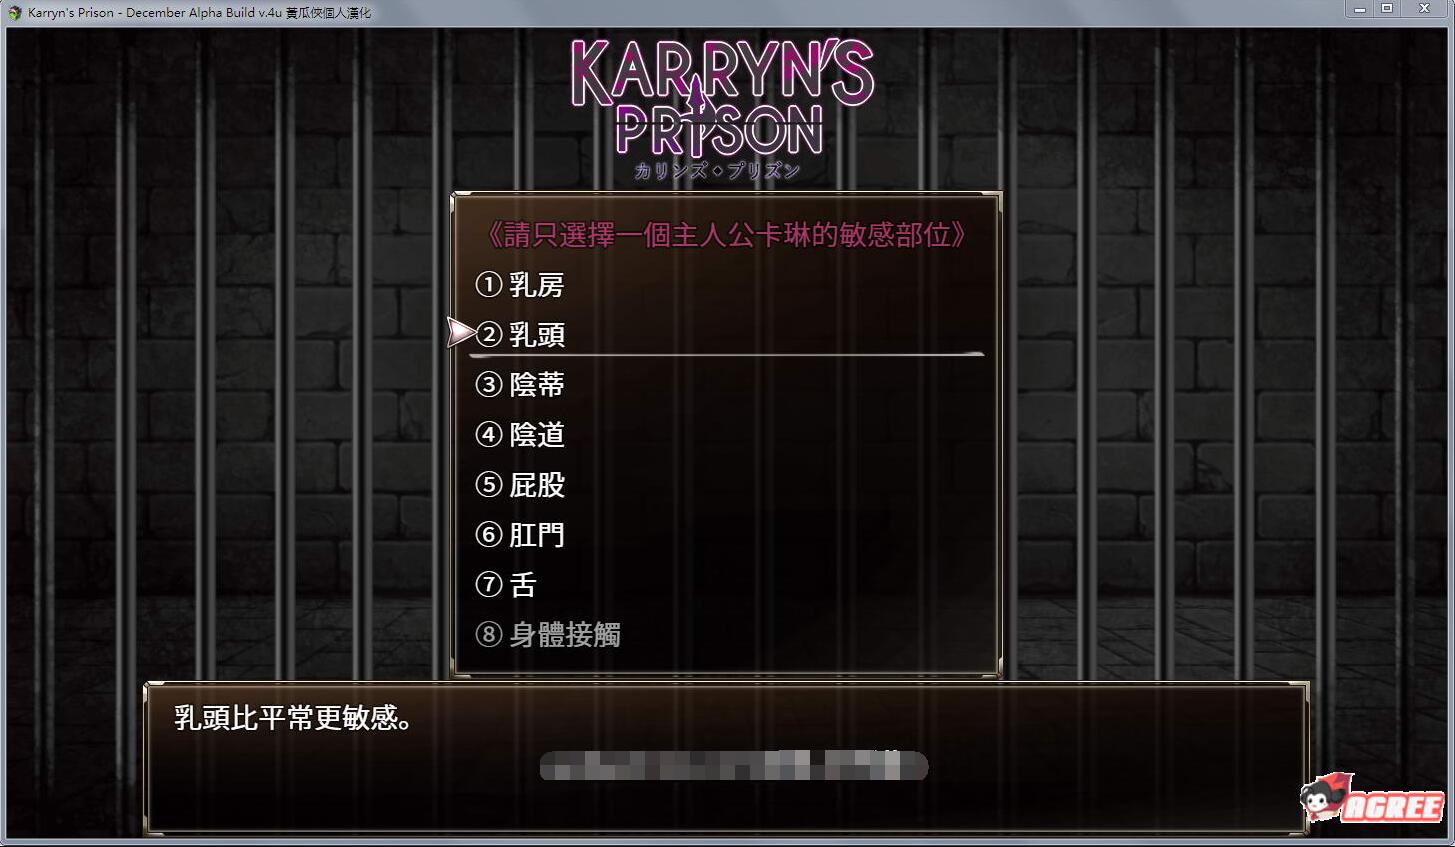 卡琳·监狱长 V.7A.k RPG作弊步兵魔改新汉化版/1月1日更新/1G-acg169